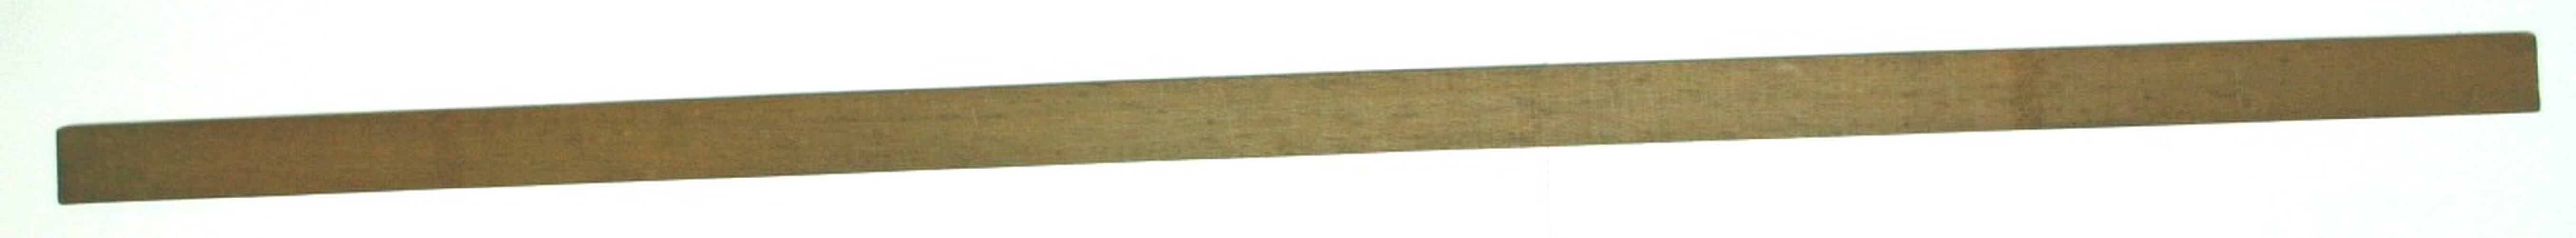 Warp Stick - Countermarch Floor Loom